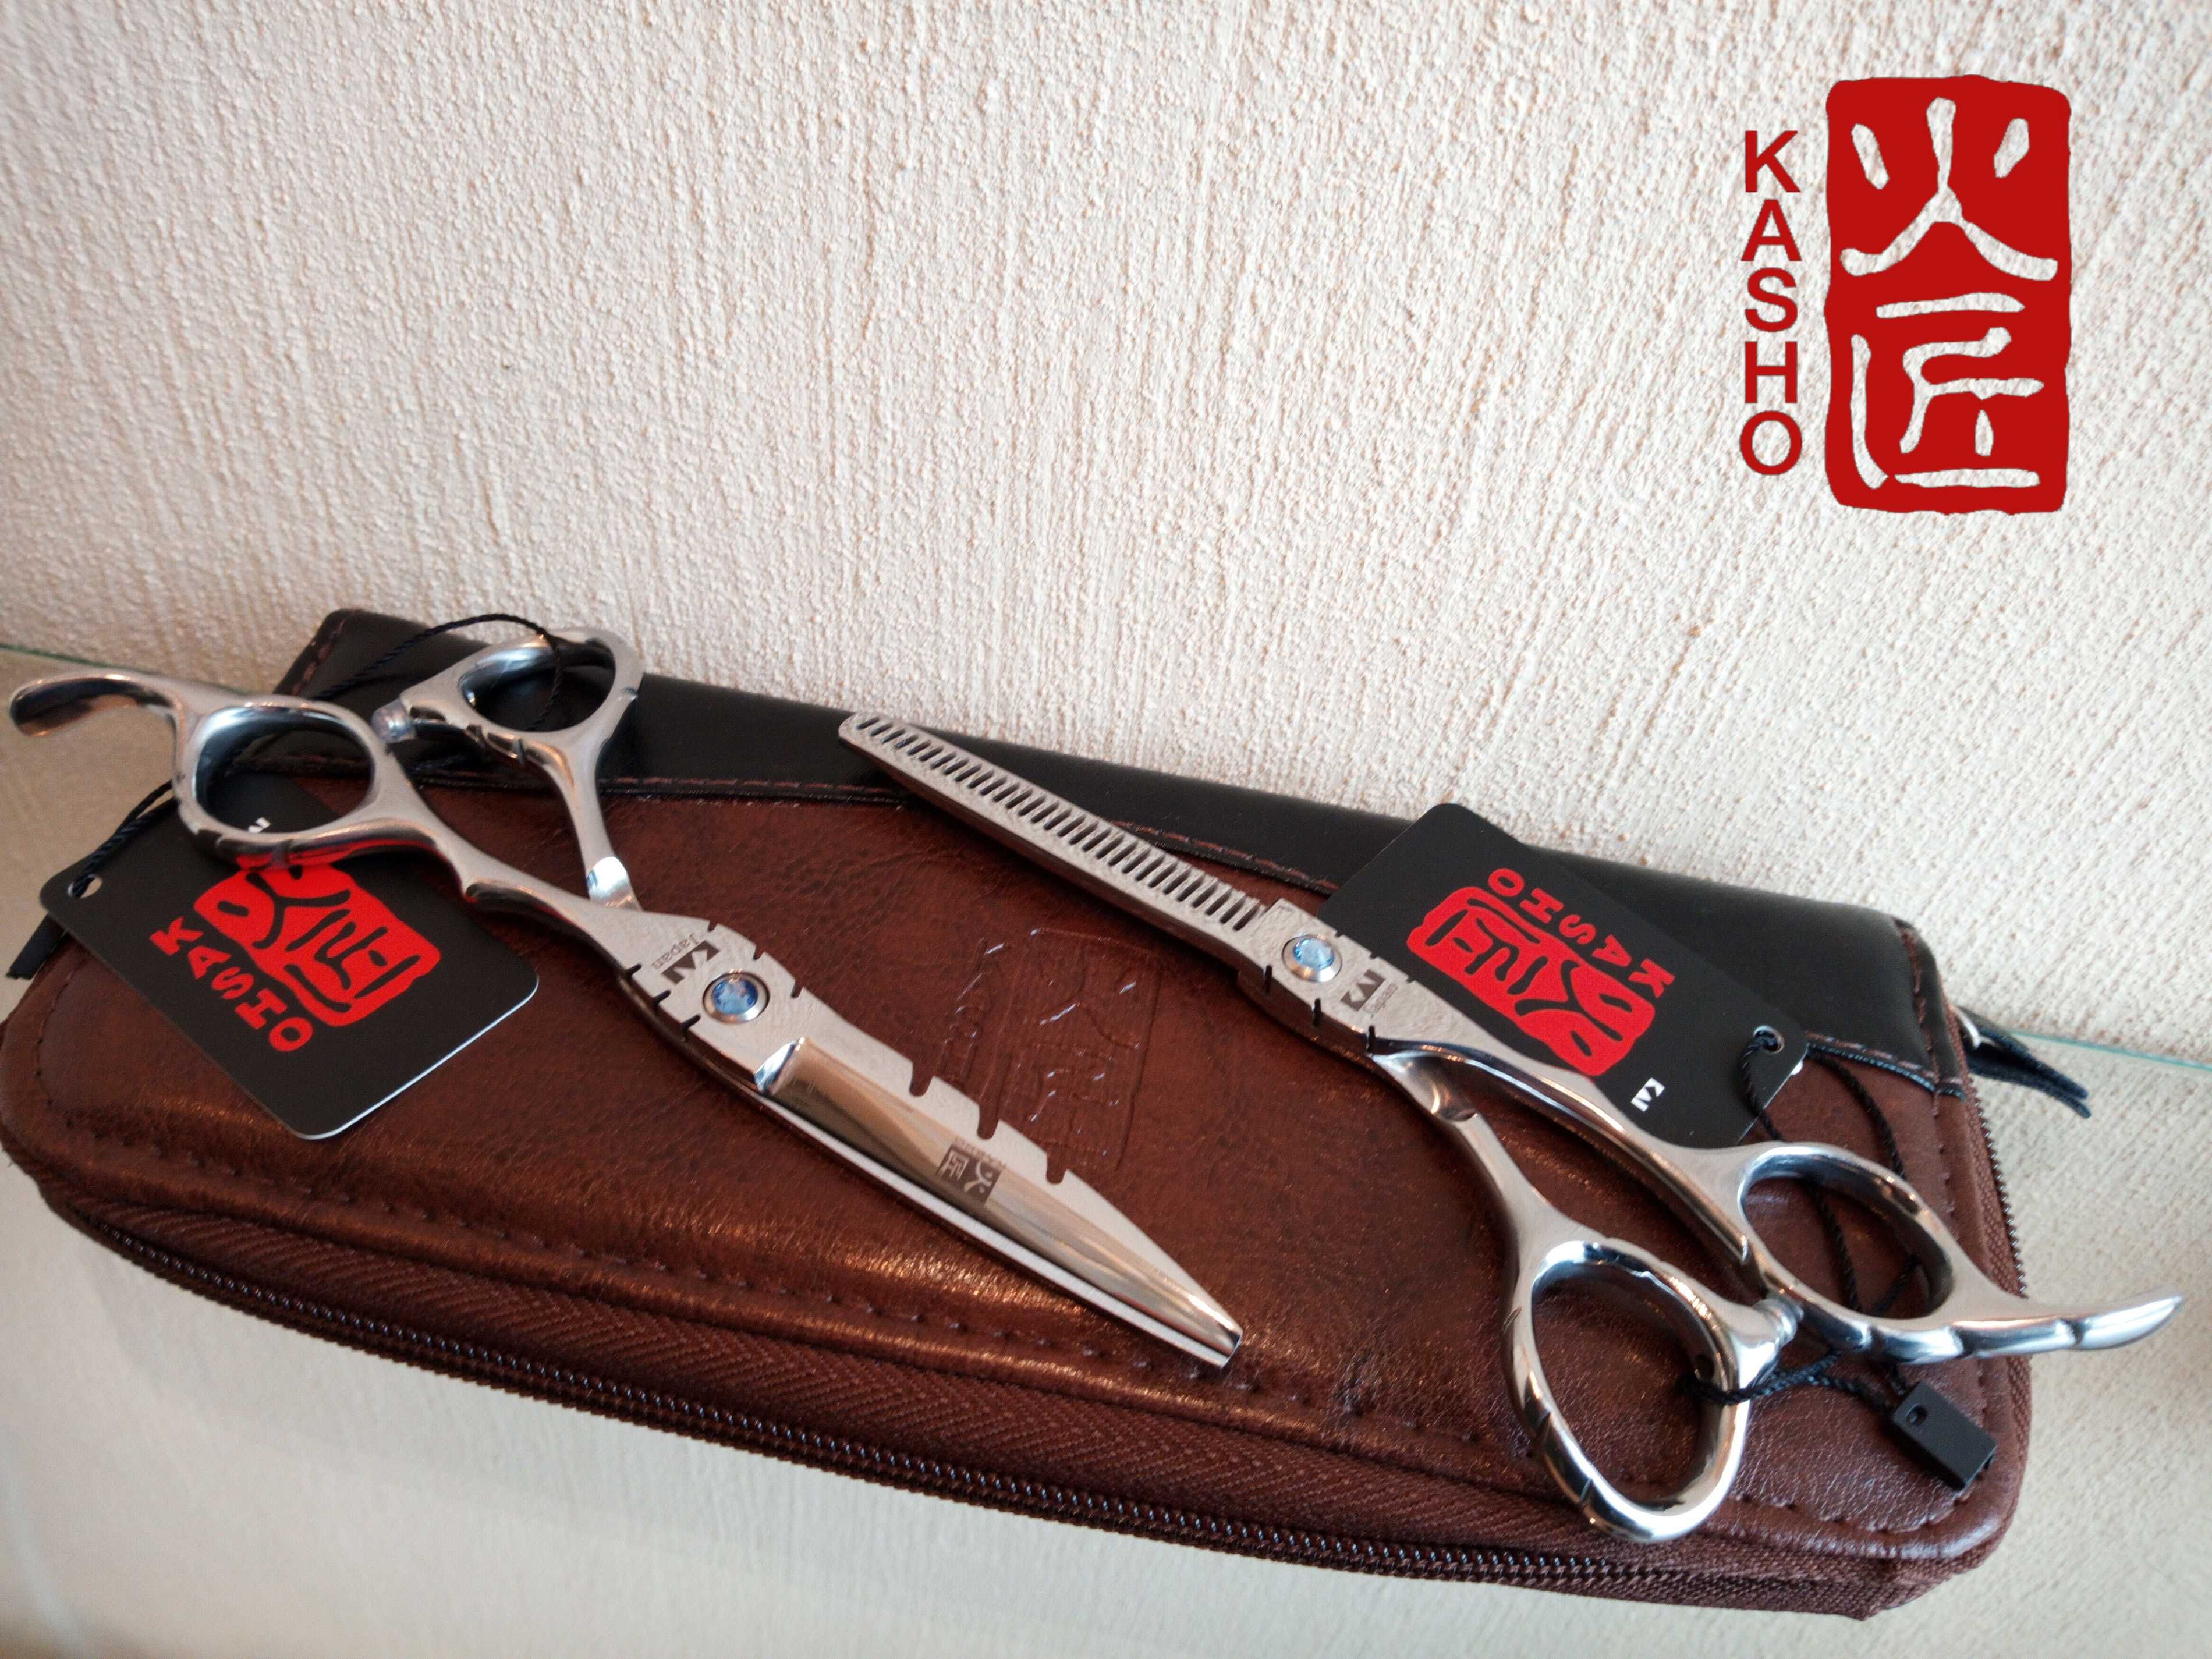 Парикмахерские профессиональные ножницы KASHO 5.5 дюймов стрижки волос